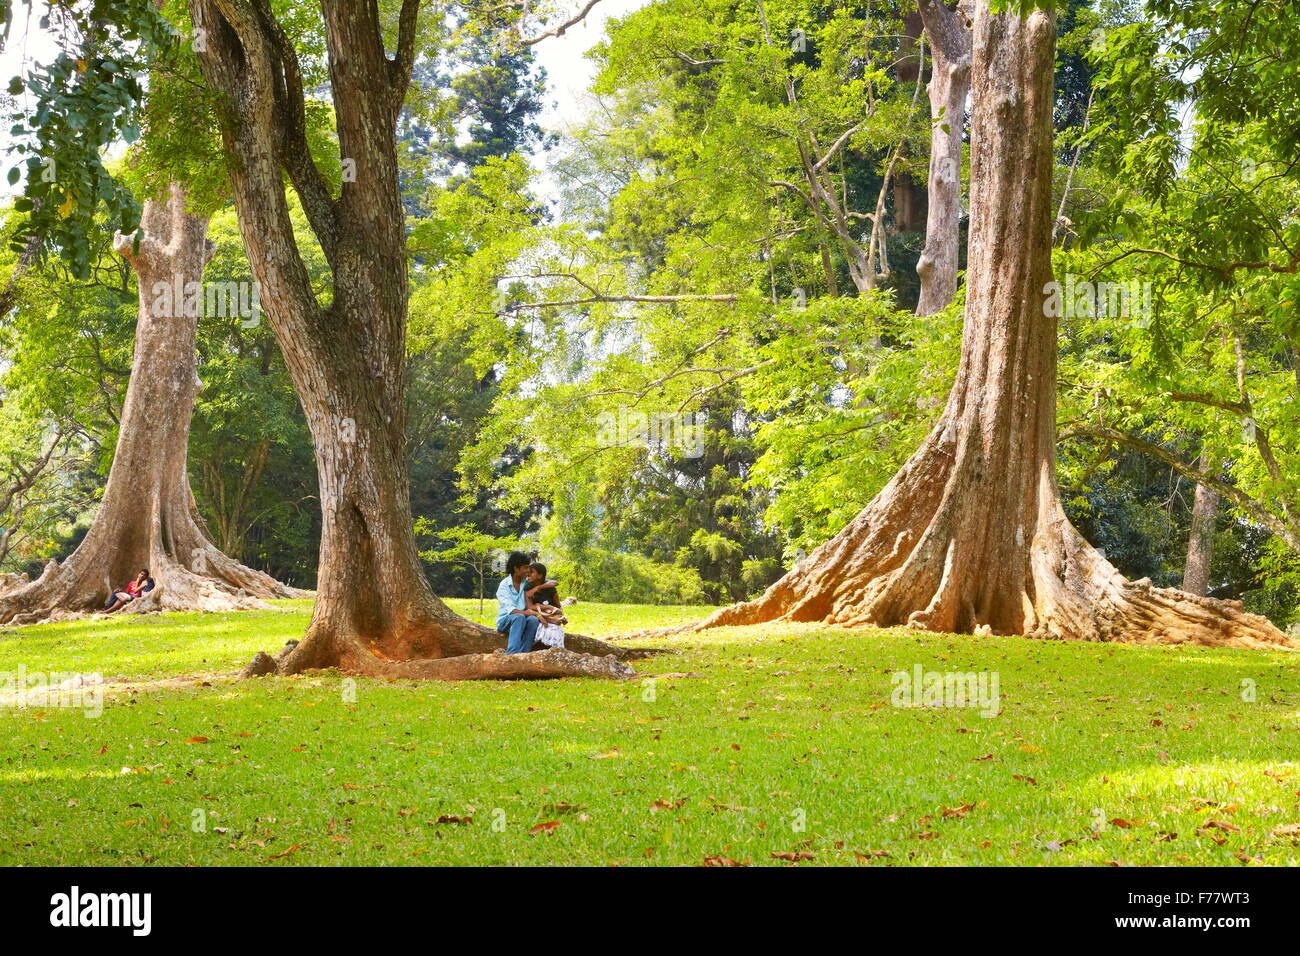 Sri Lanka - Kandy, Peradeniya Botanic Garden Stock Photo